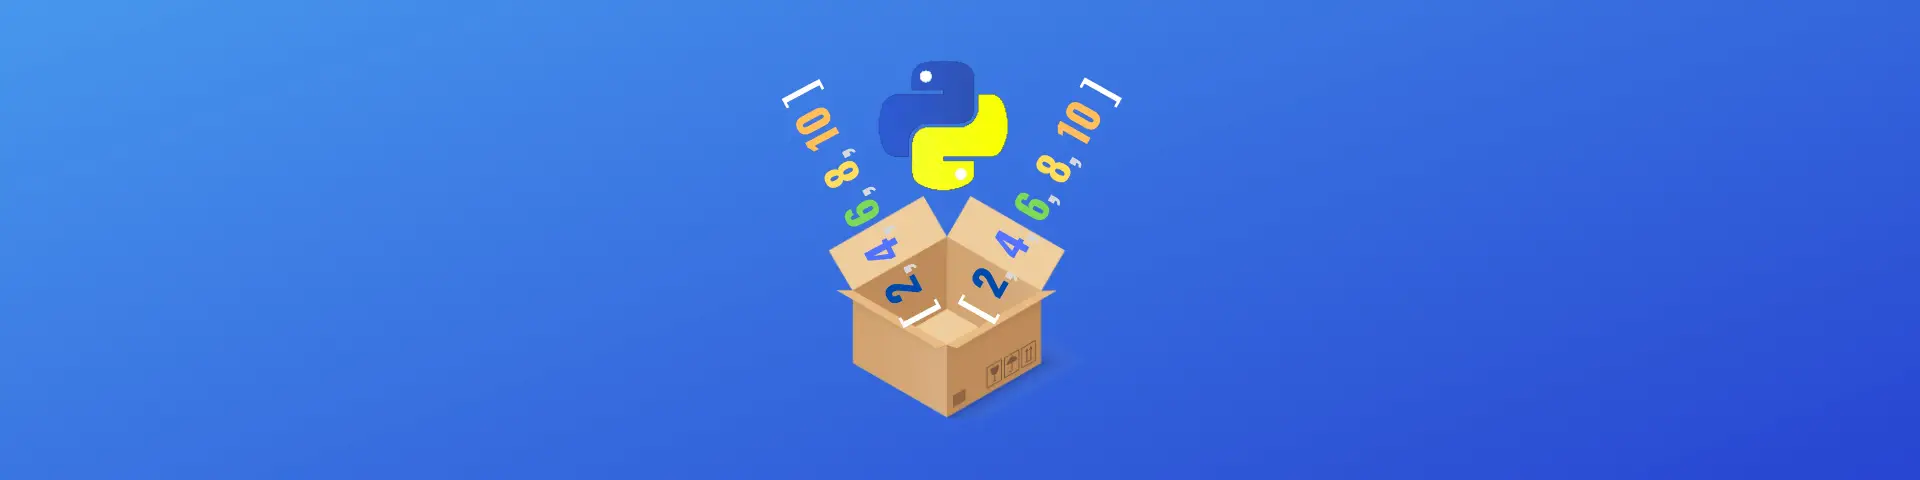 Unpack List in Python